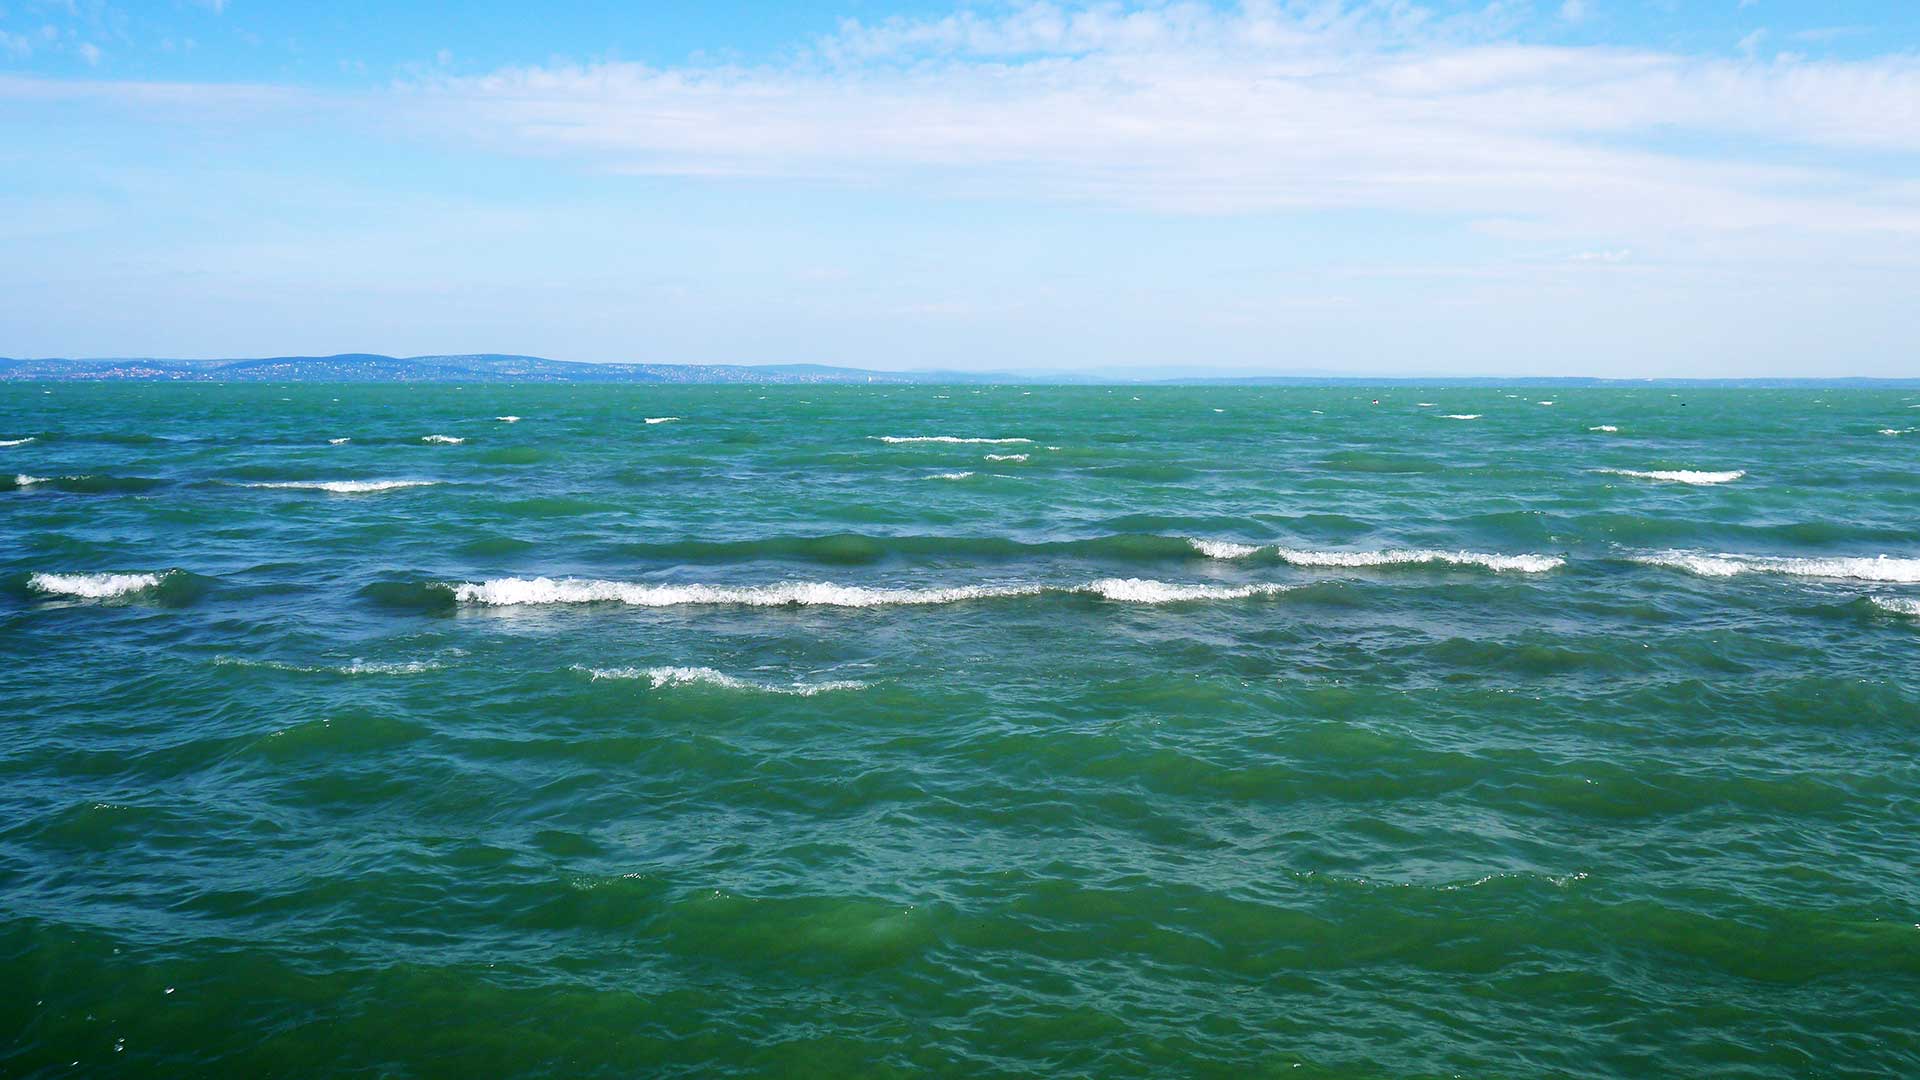 Balaton, bukóhullámok. Ha hirtelen támad fel a szél, még nem keveredett fel a víz, akkor lehet ilyet fotózni. Kék víz, fehér hullámok.